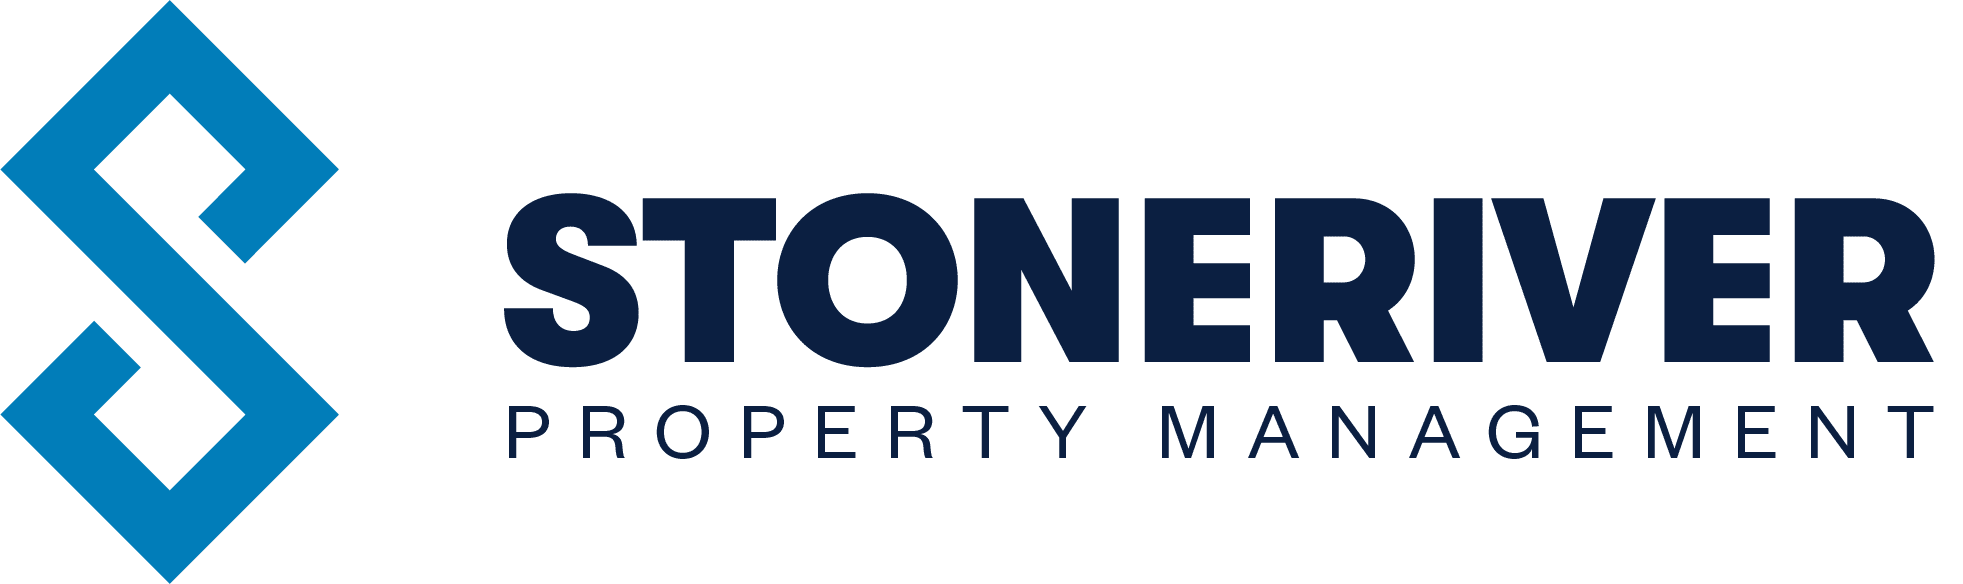 StoneRiver Property Management logo